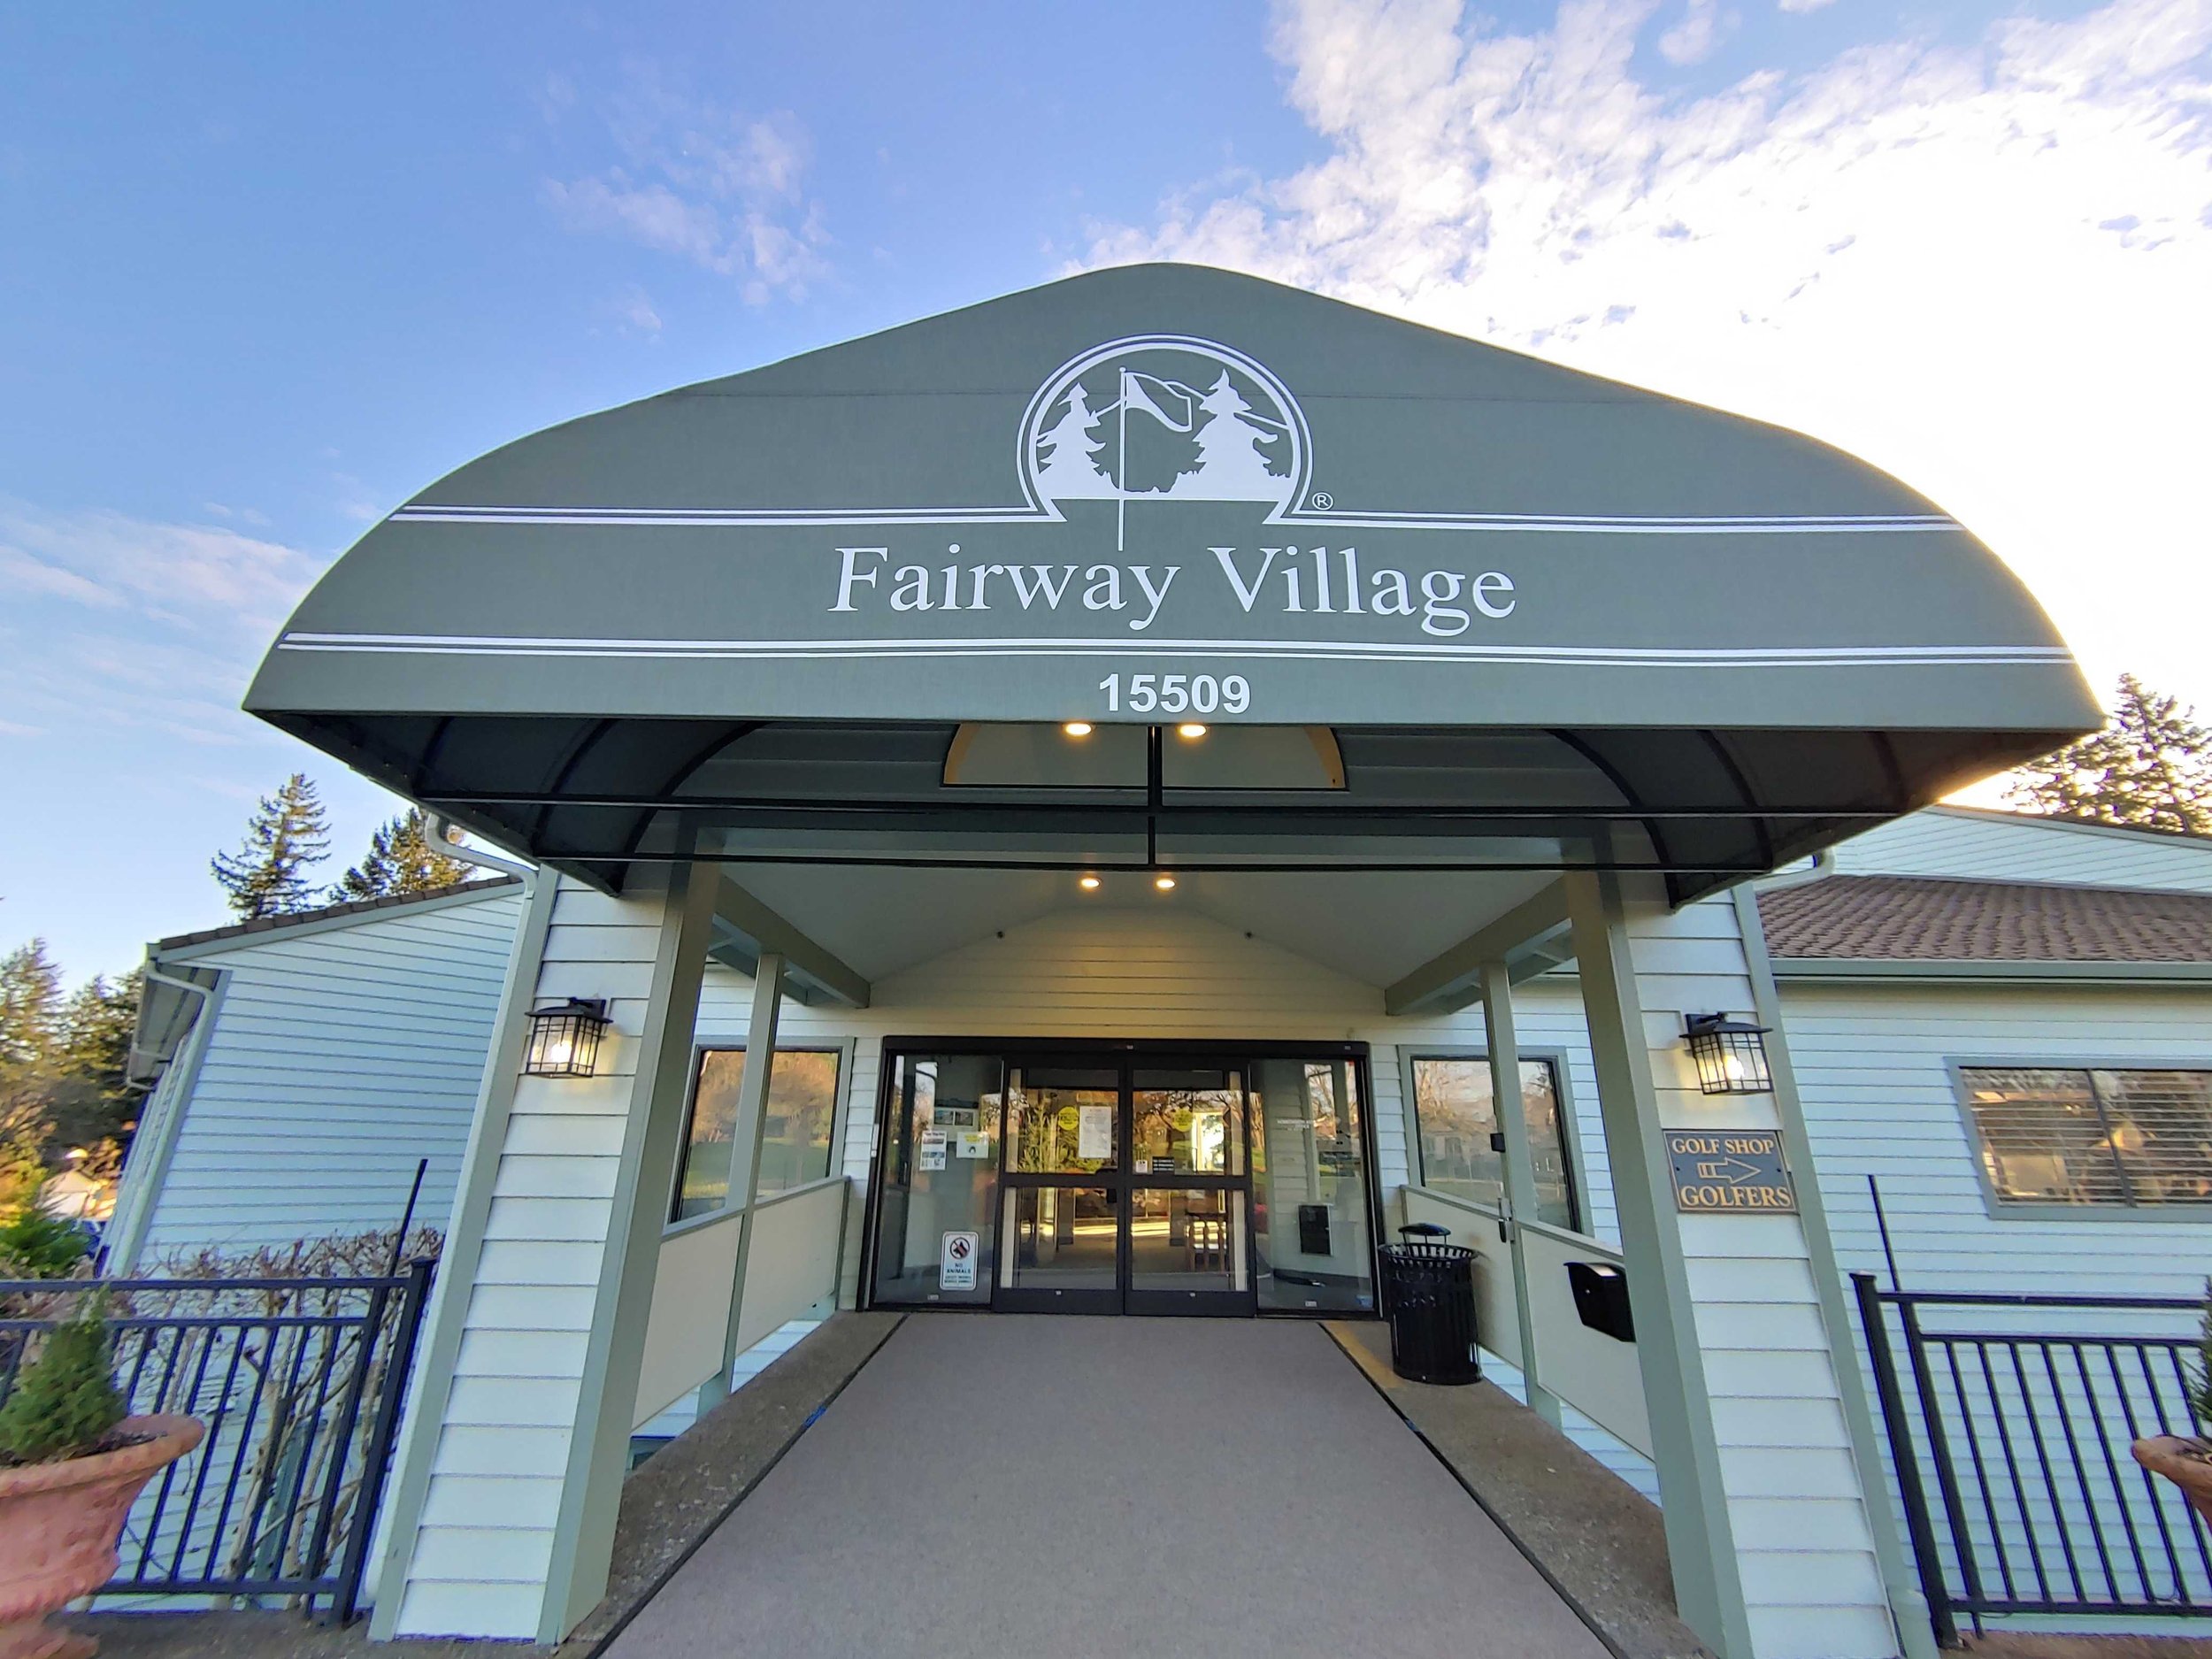 Fairway village final photo.jpg